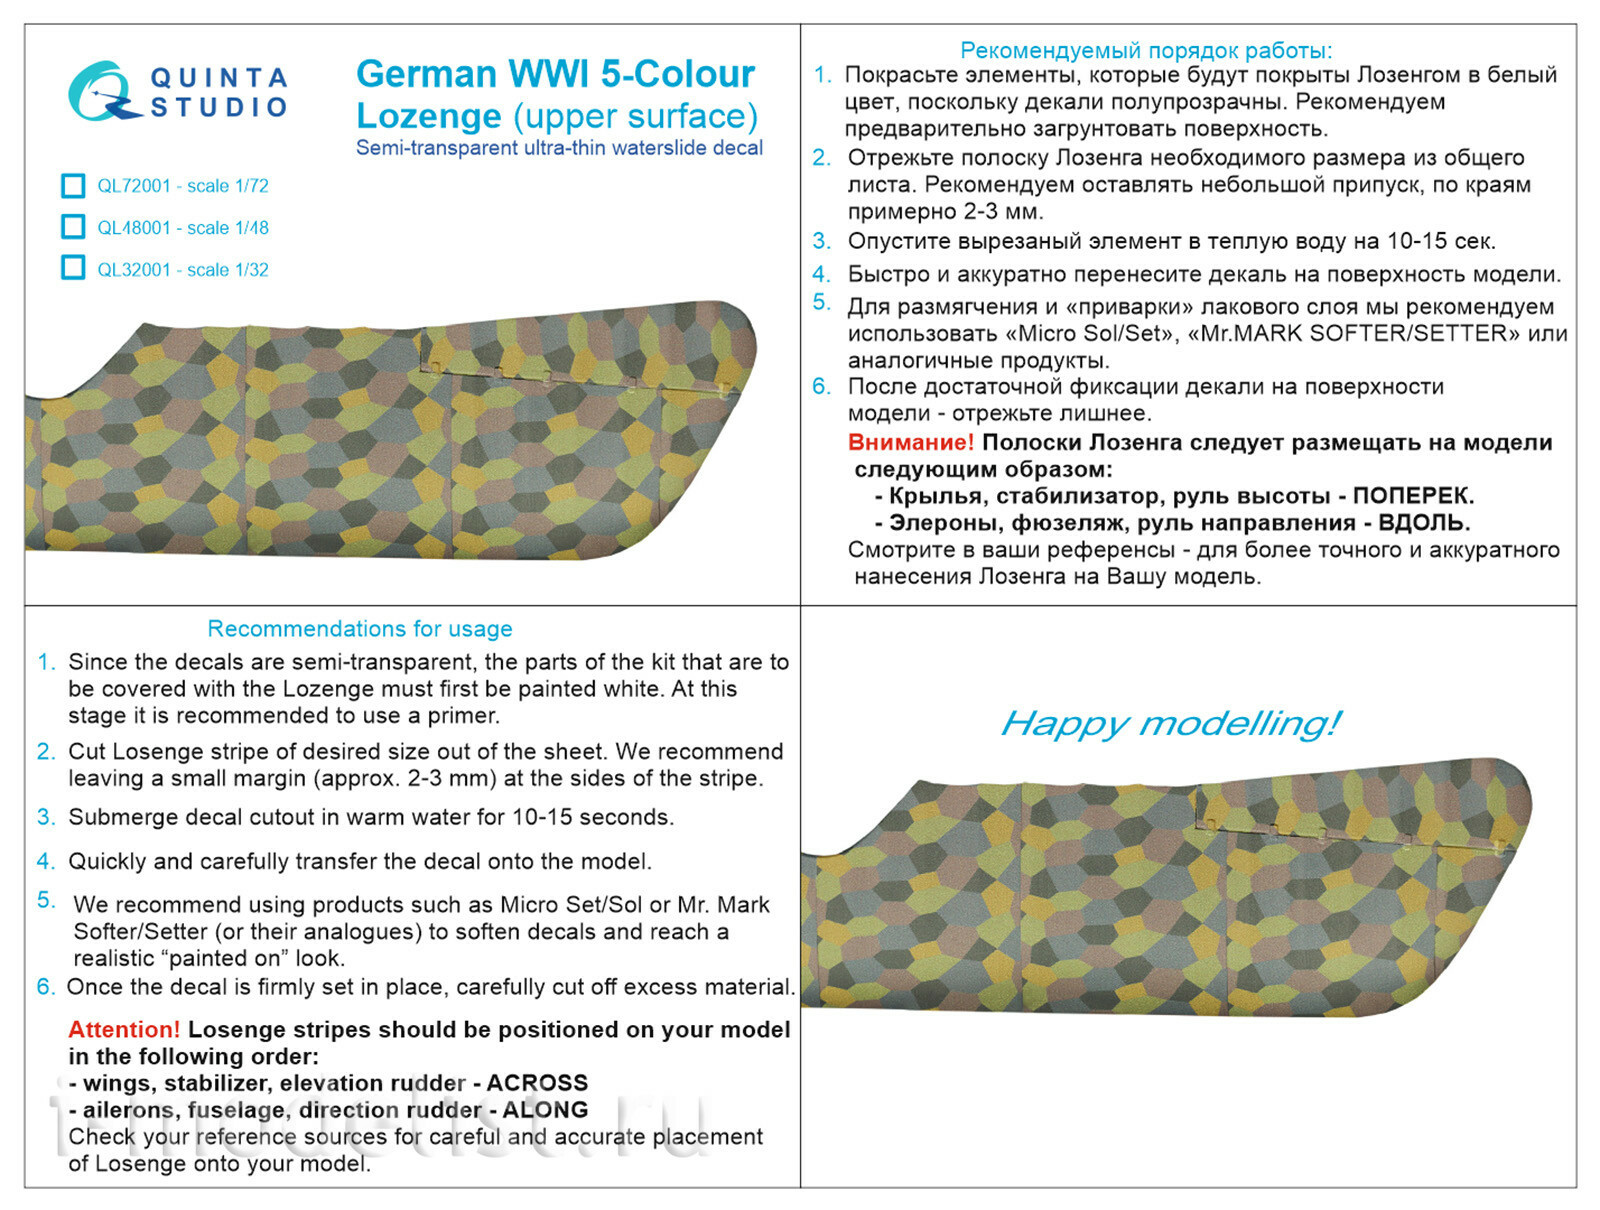 QL72001 Quinta Studio 1/72 German WWI 5-color Lozenges (upper surfaces)